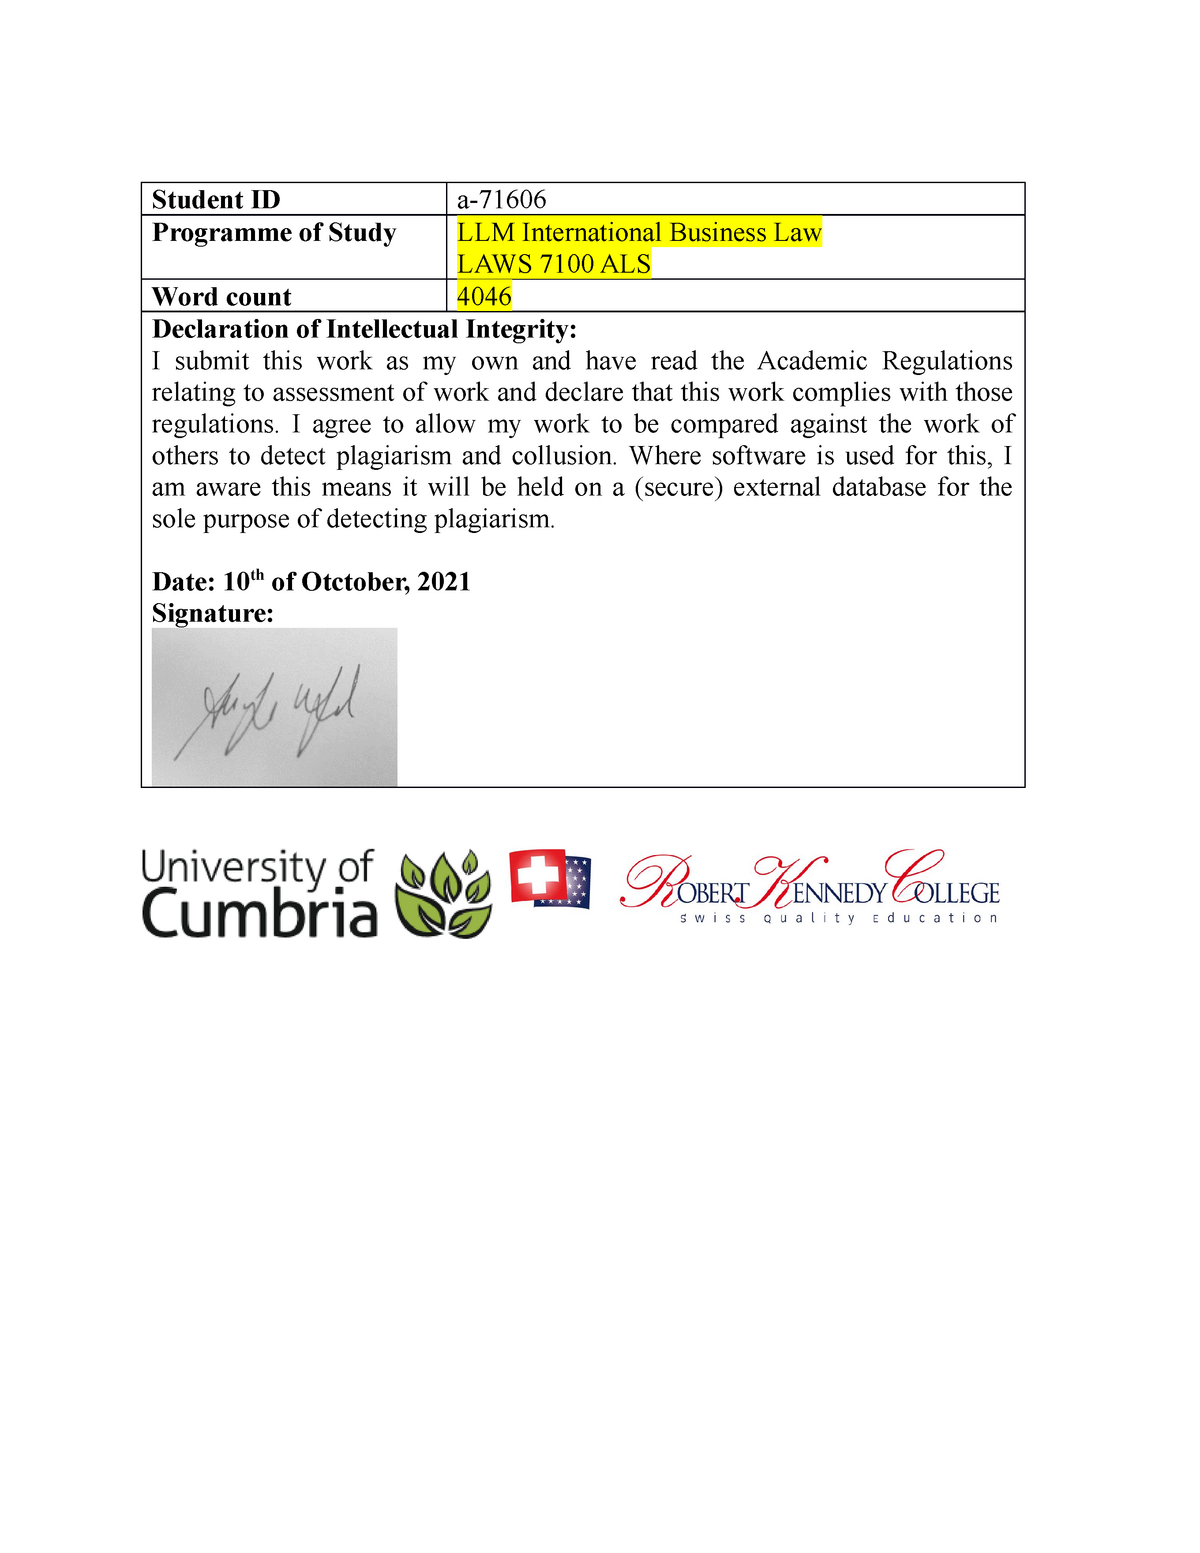 university of cumbria assignment format